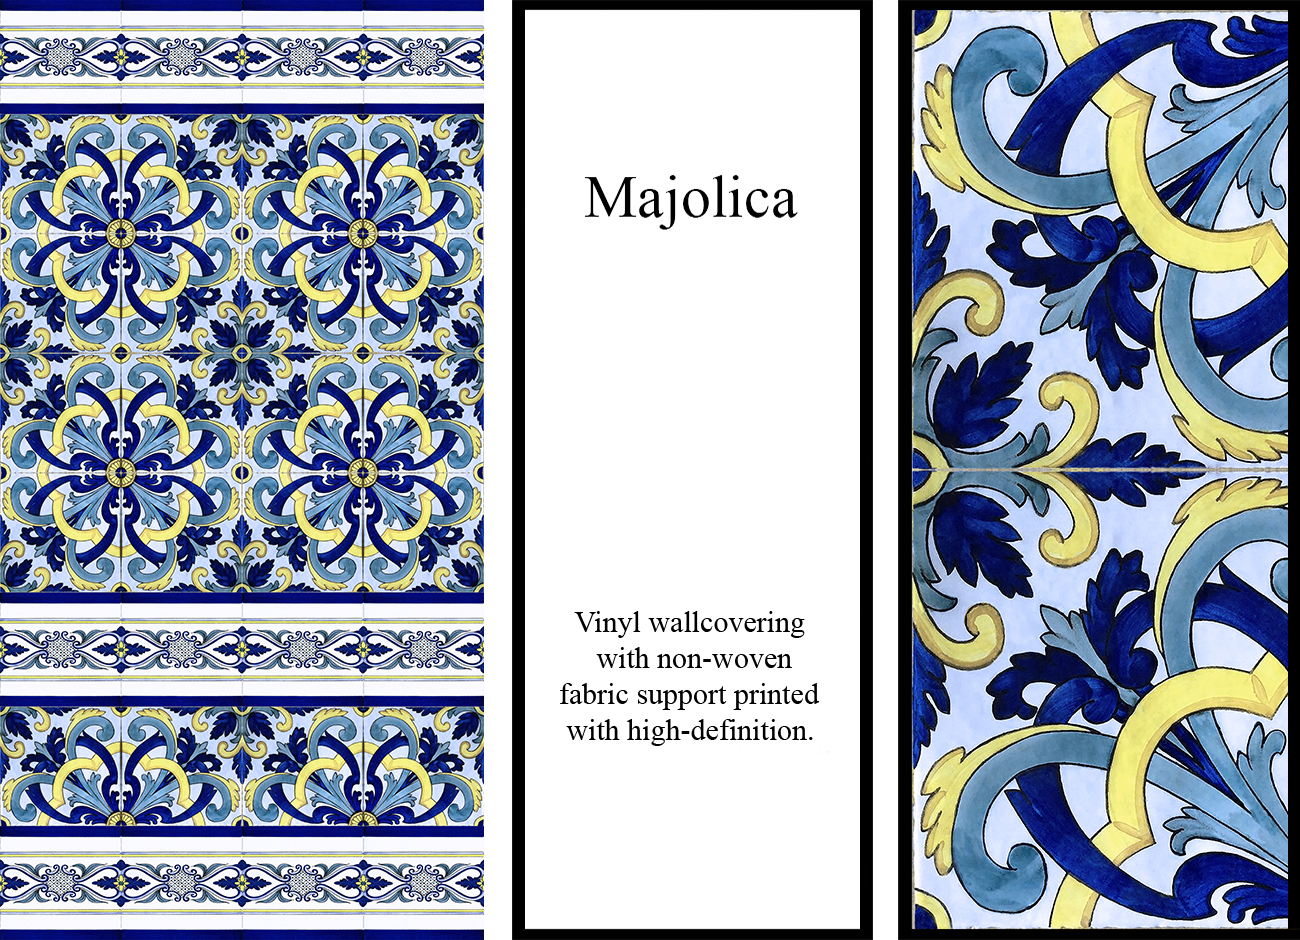 Carta da parati con maioliche a texture floreale dai colori blu, azzurro e giallo